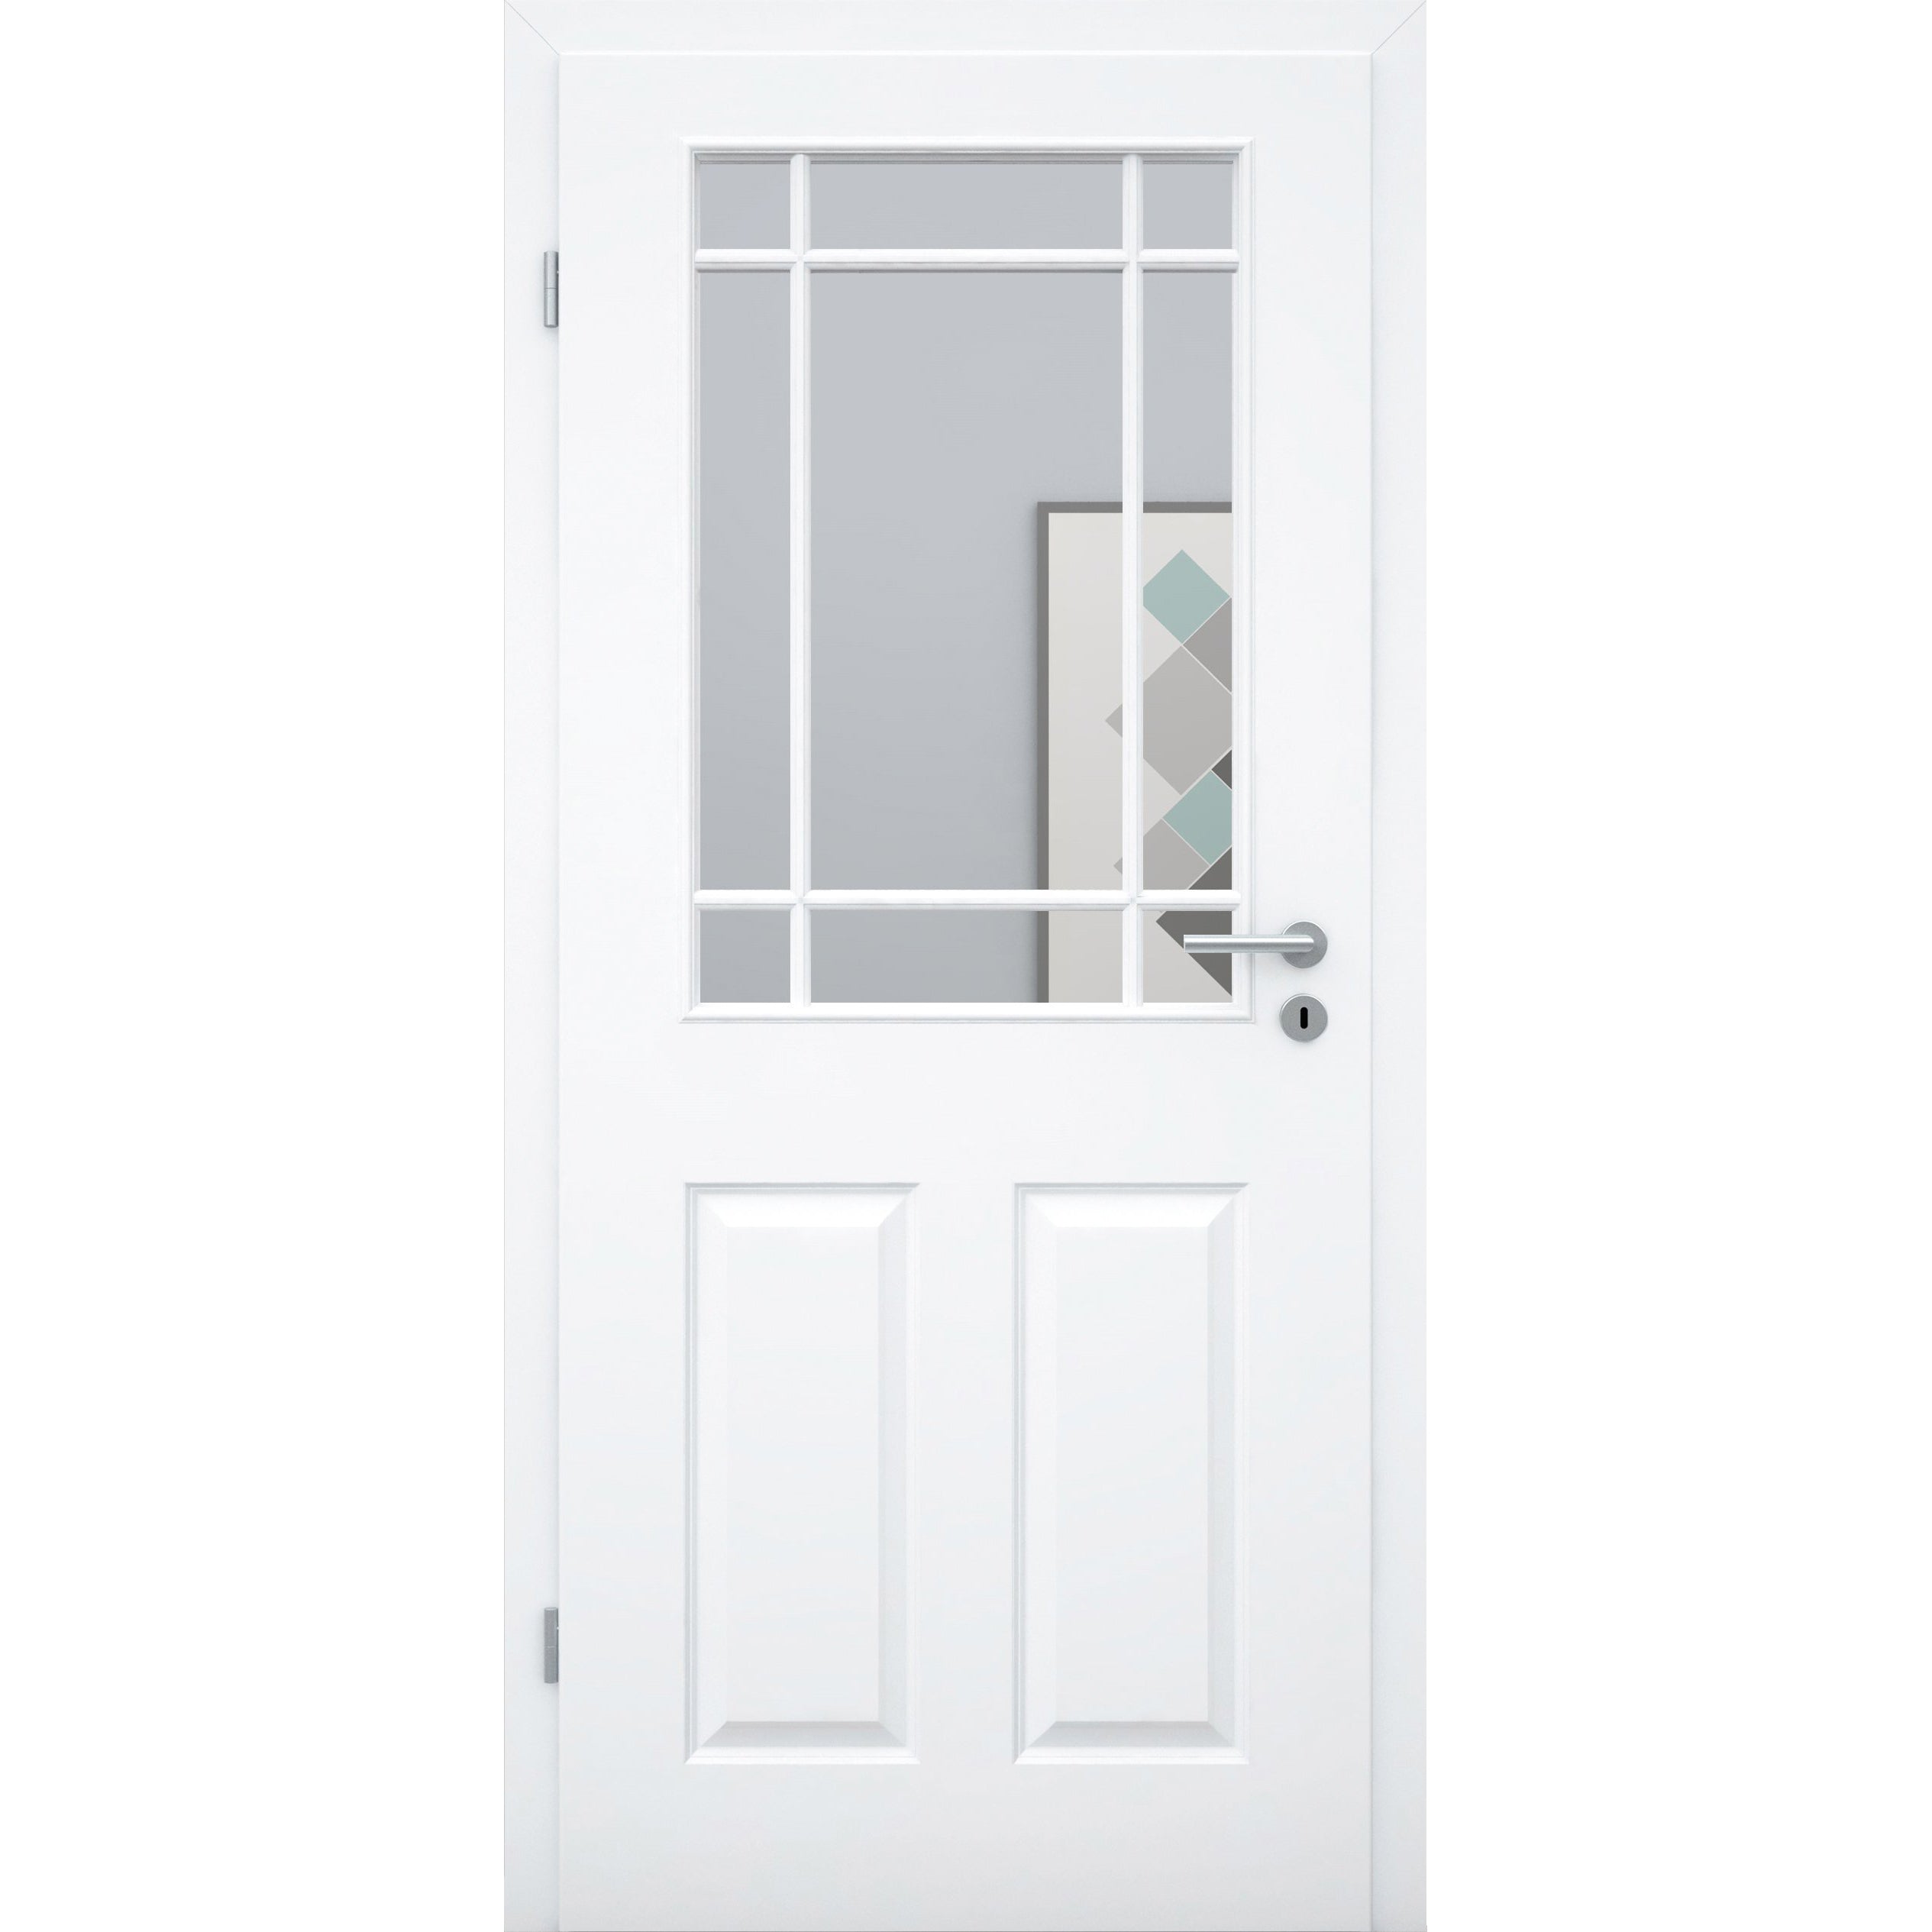 Zimmertür mit Lichtausschnitt mit Sprossenrahmen klassisch brillant-weiß 4 Kassetten Designkante - Modell Stiltür K43LASPK